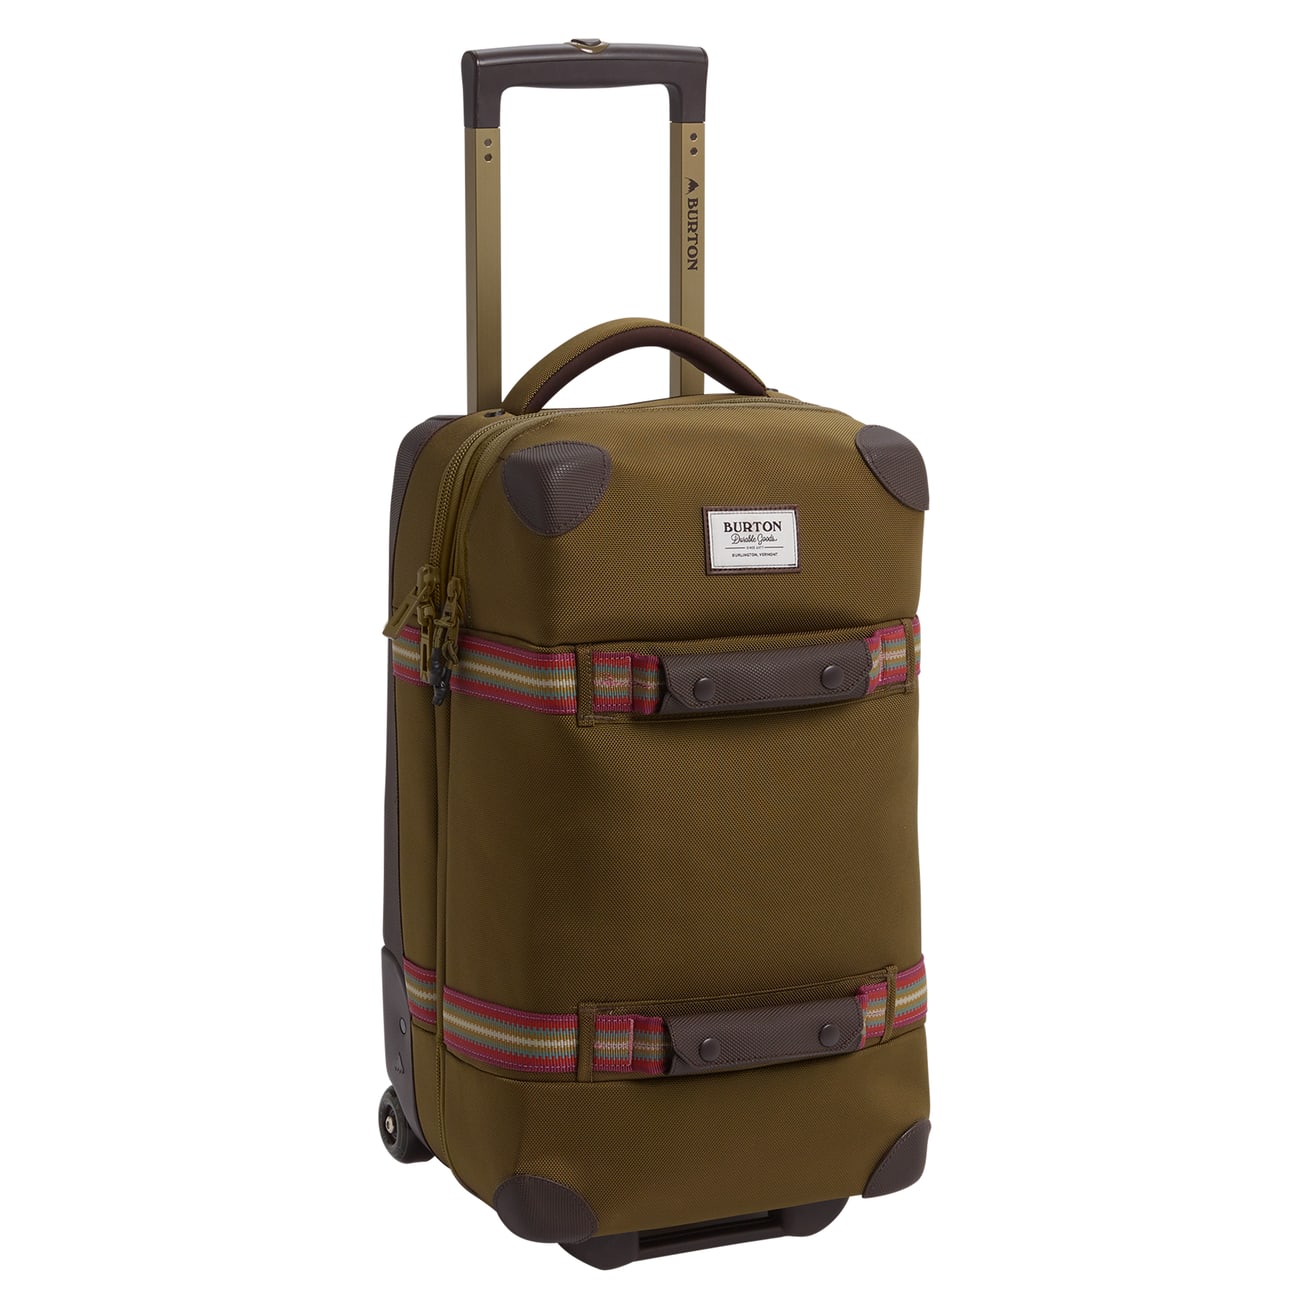 Køb Burton Wheelie Flight Travel Bag fra Outnorth